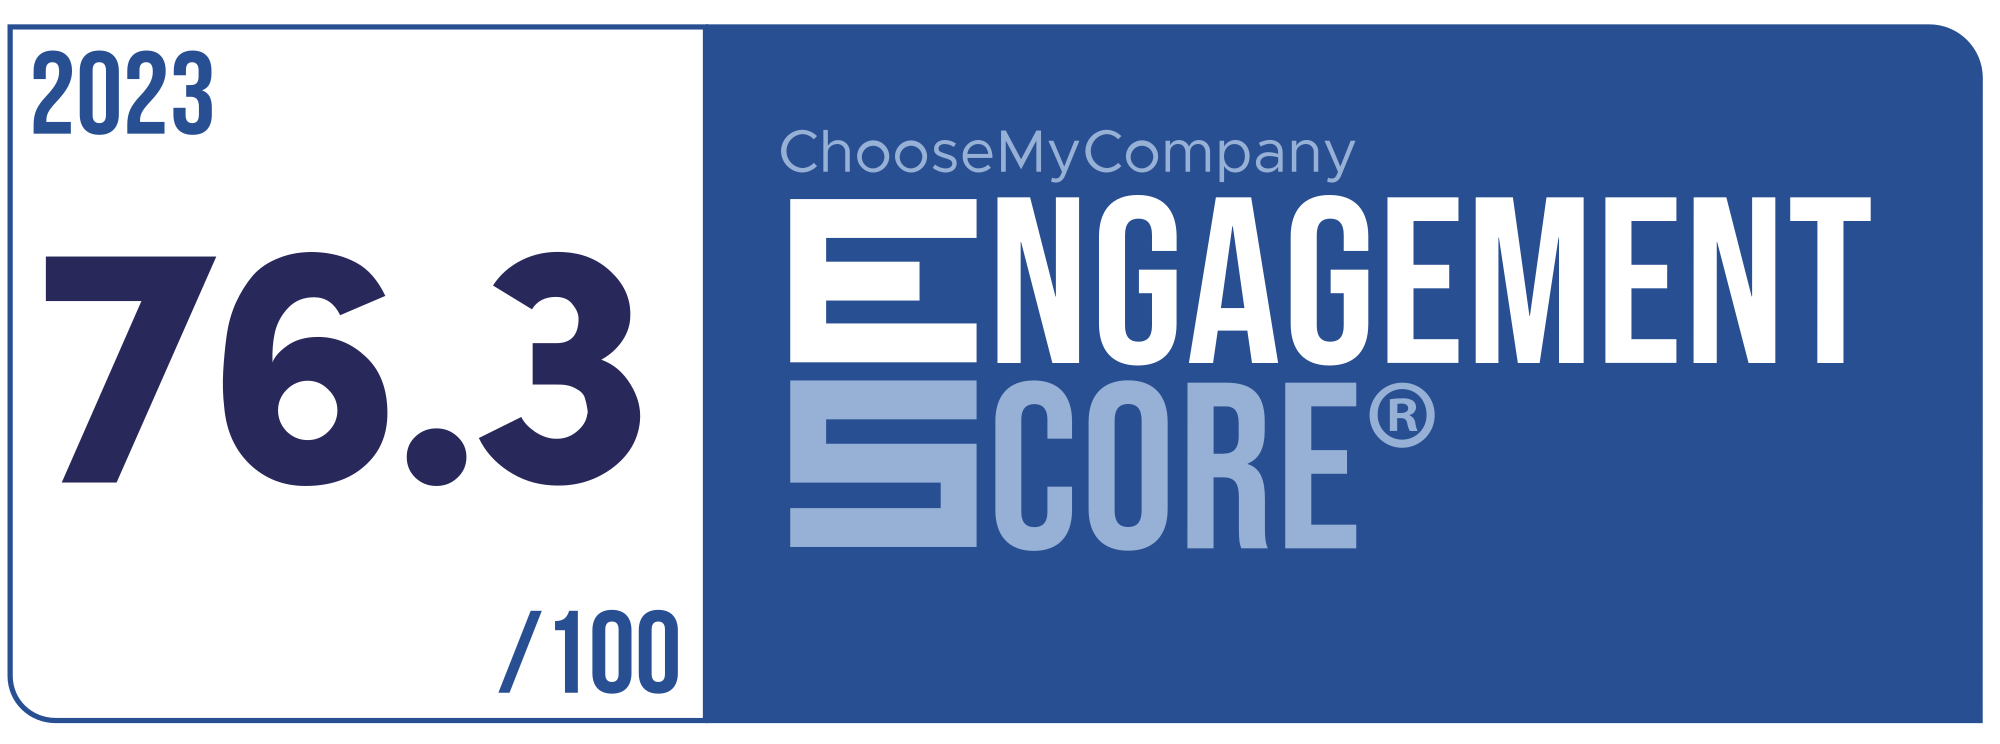 Label Engagement Score 2023 